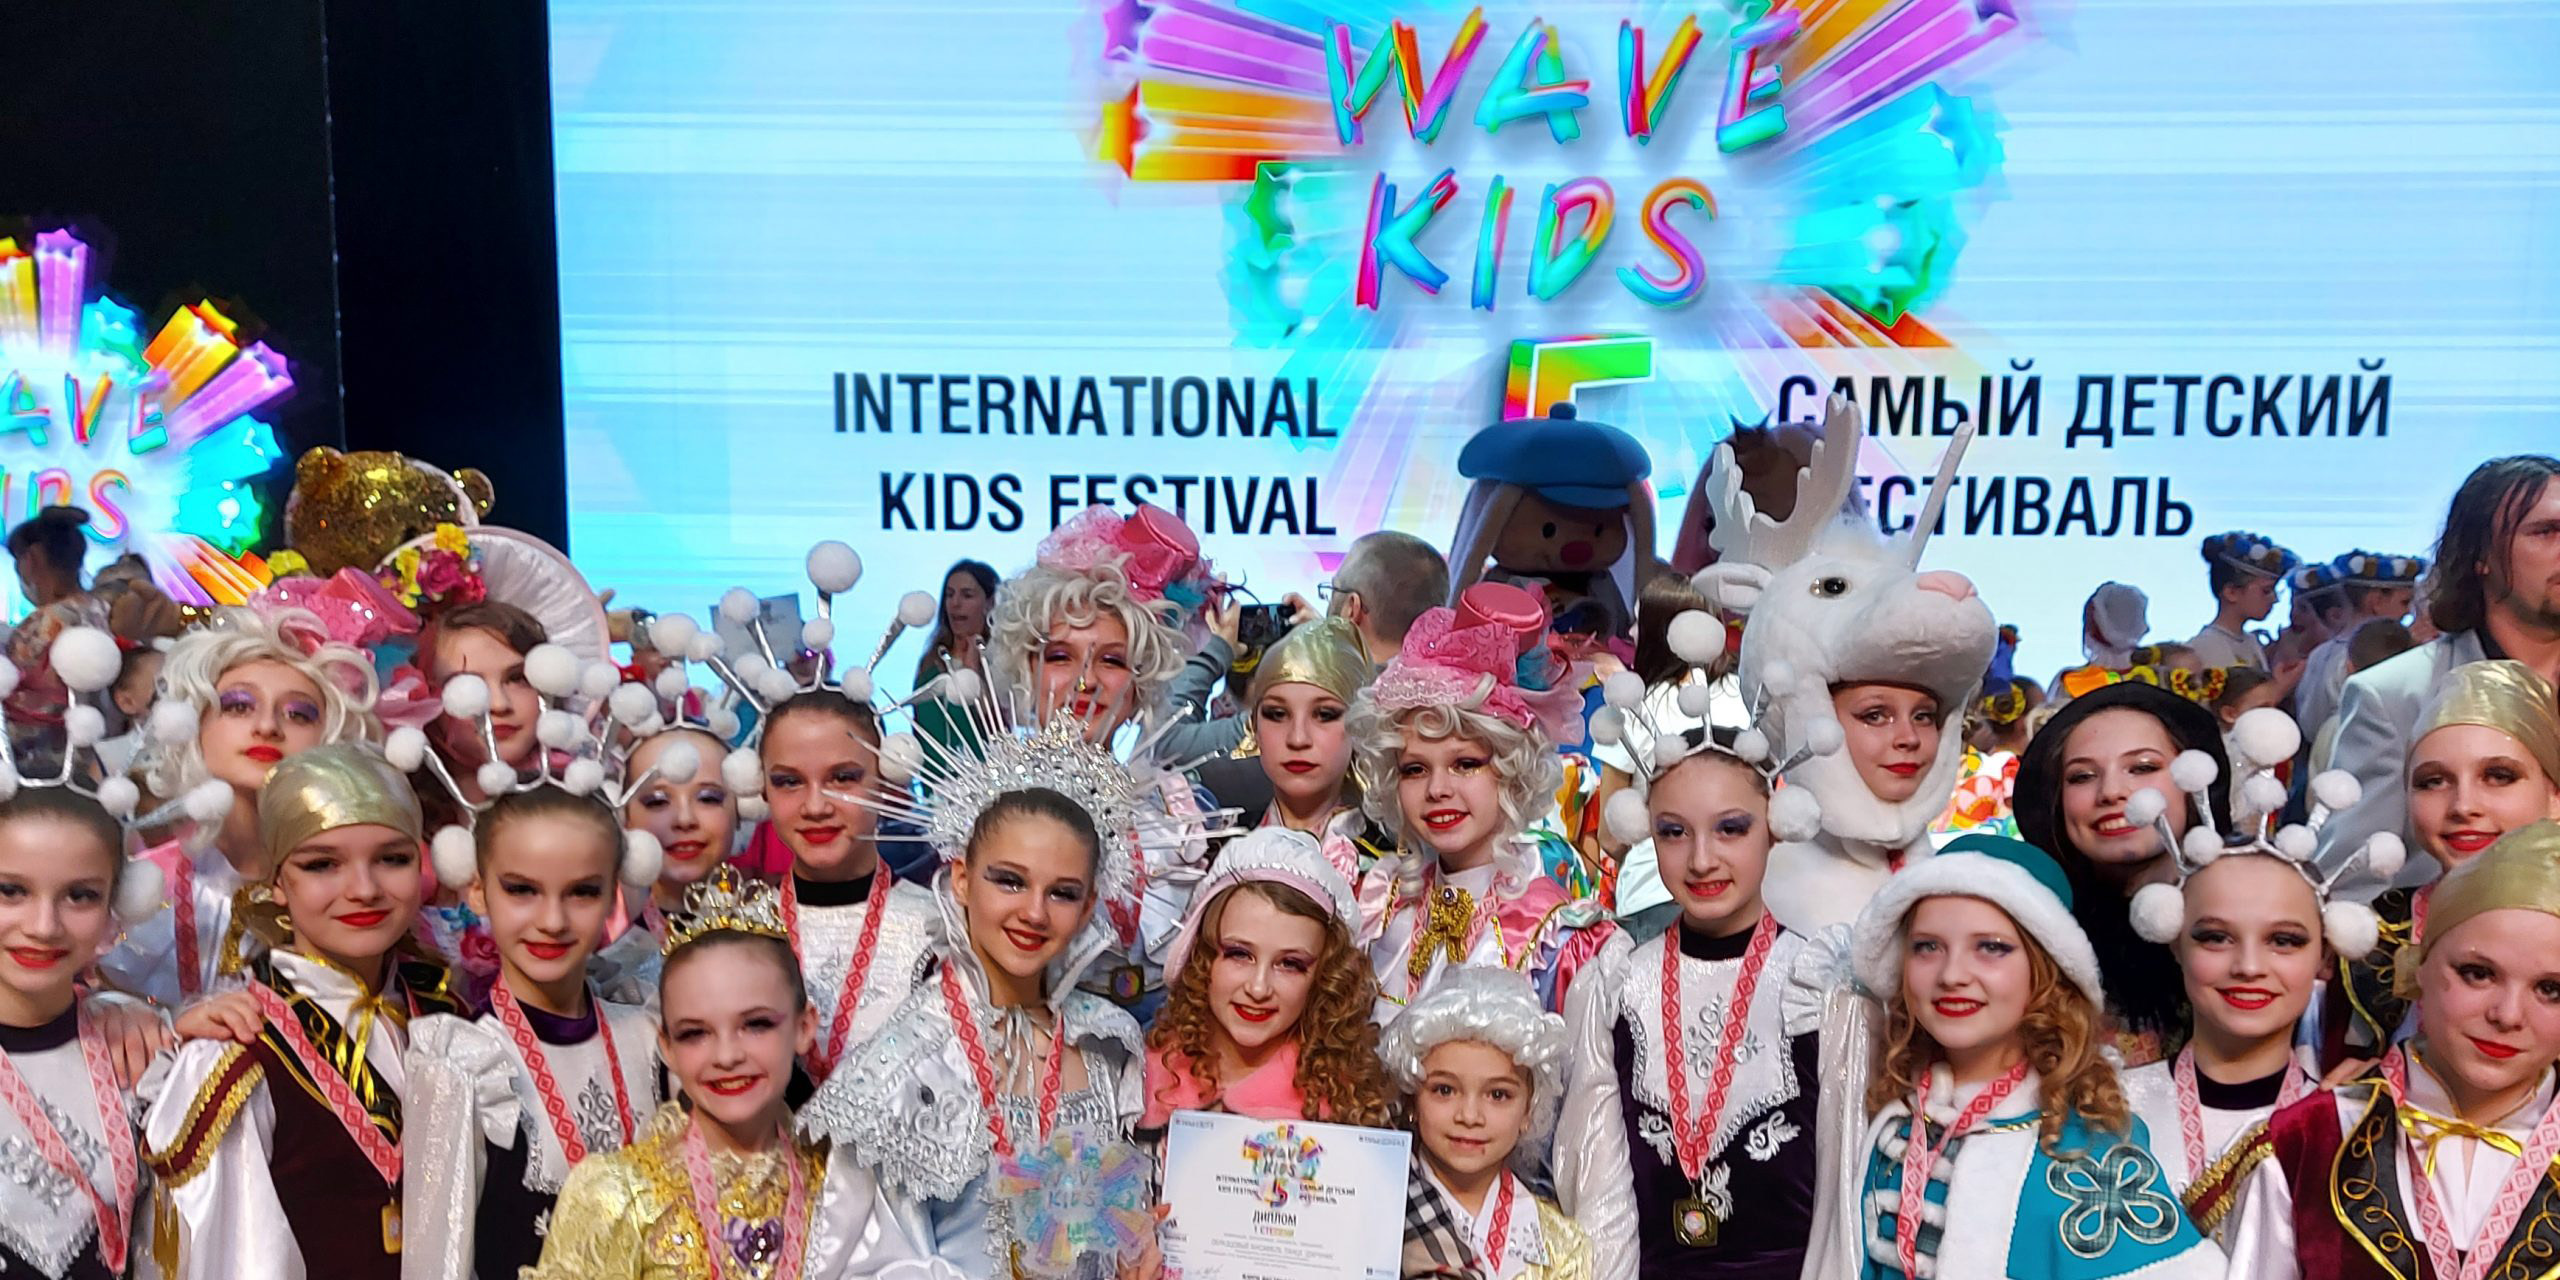 Международный фестиваль «Wave Kids» пройдет в Могилеве 13-14 ноября